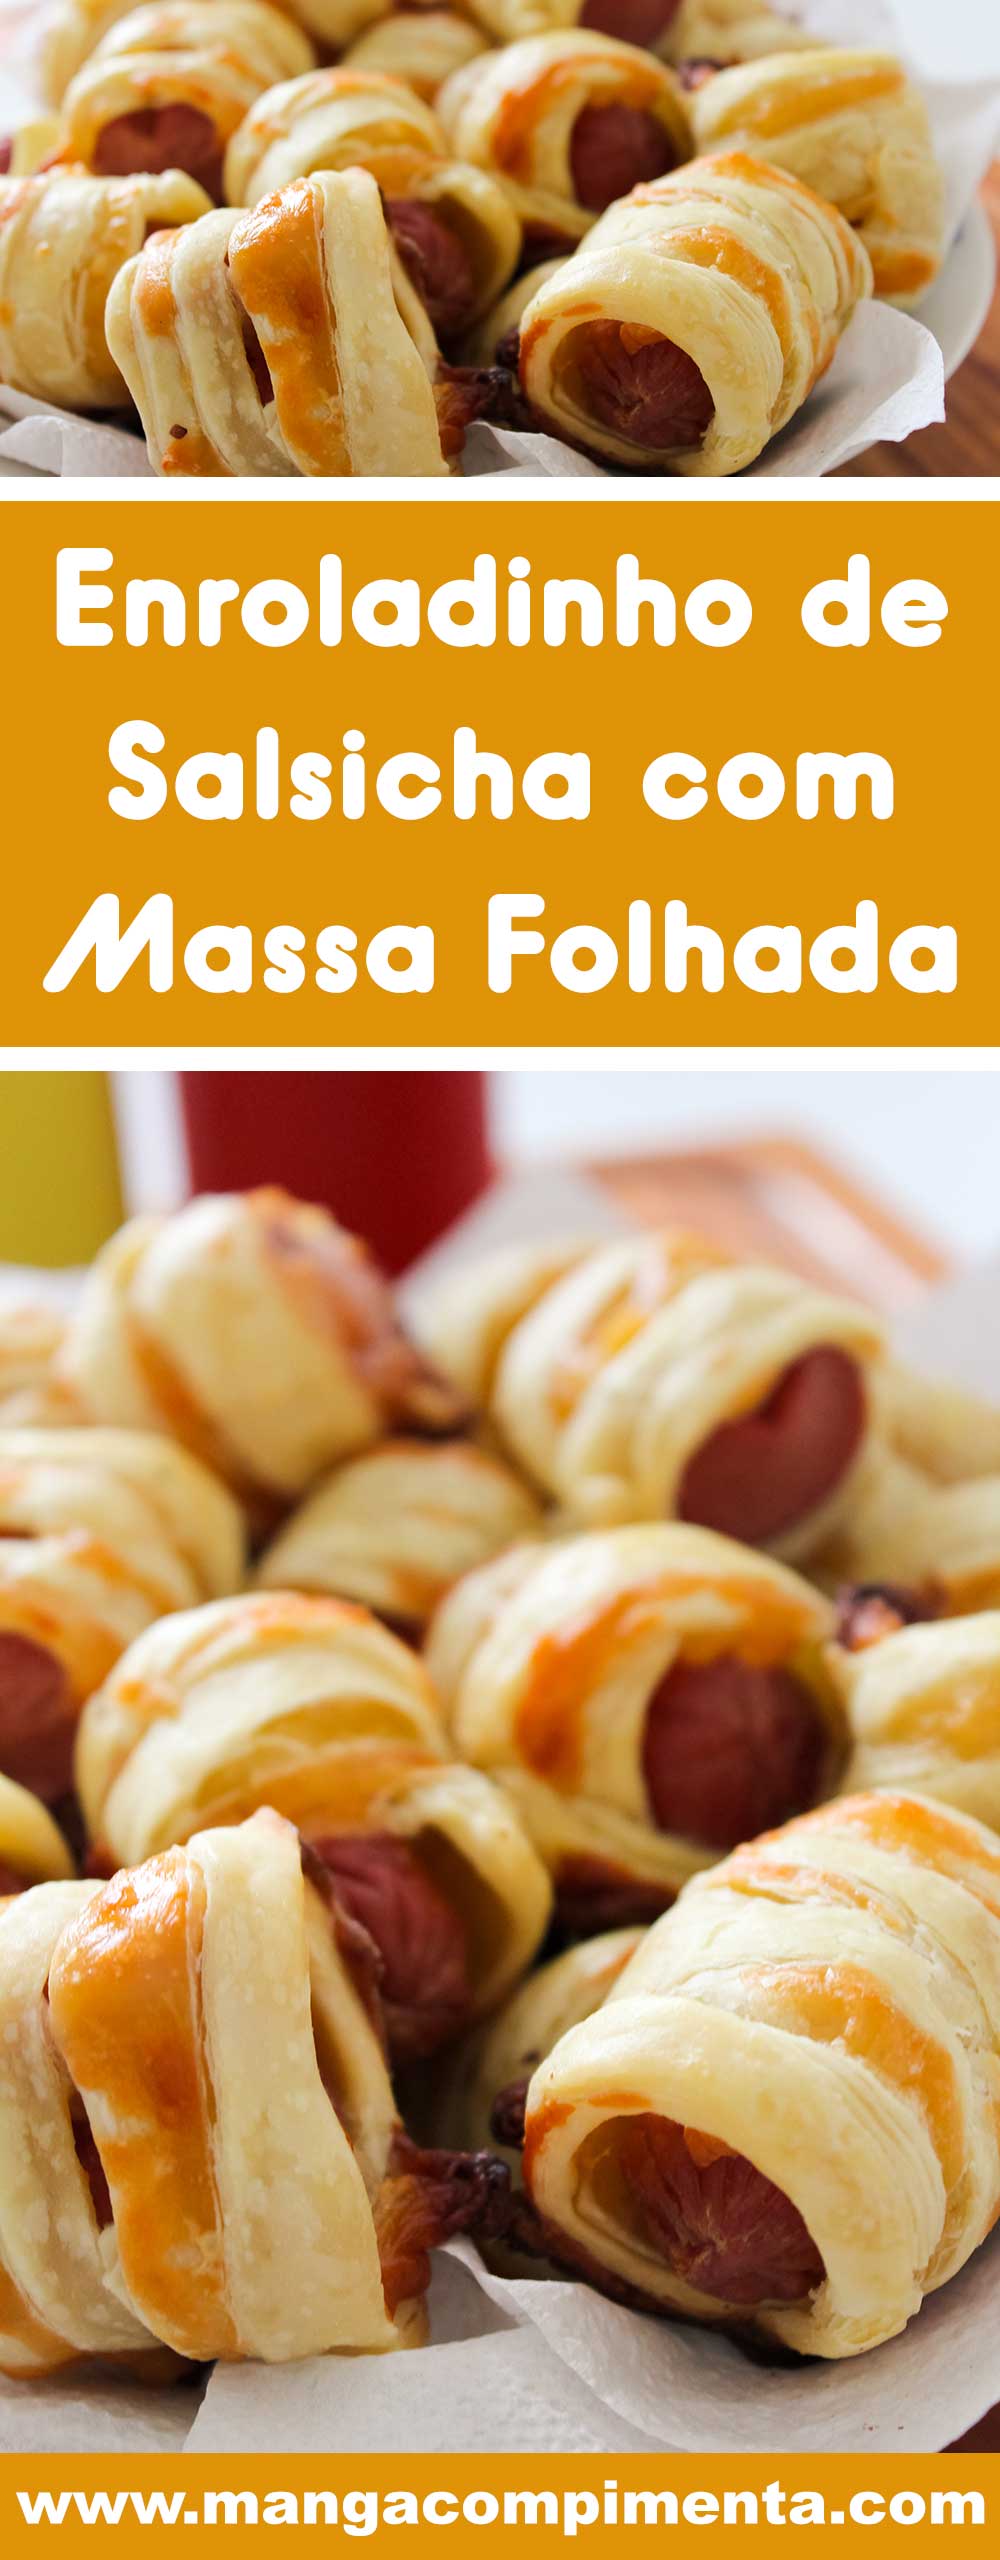 Receita de Enroladinho de Salsicha com Massa Folhada - um petisco delicioso para servir em festas ou para o lanche da tarde com os amigos.